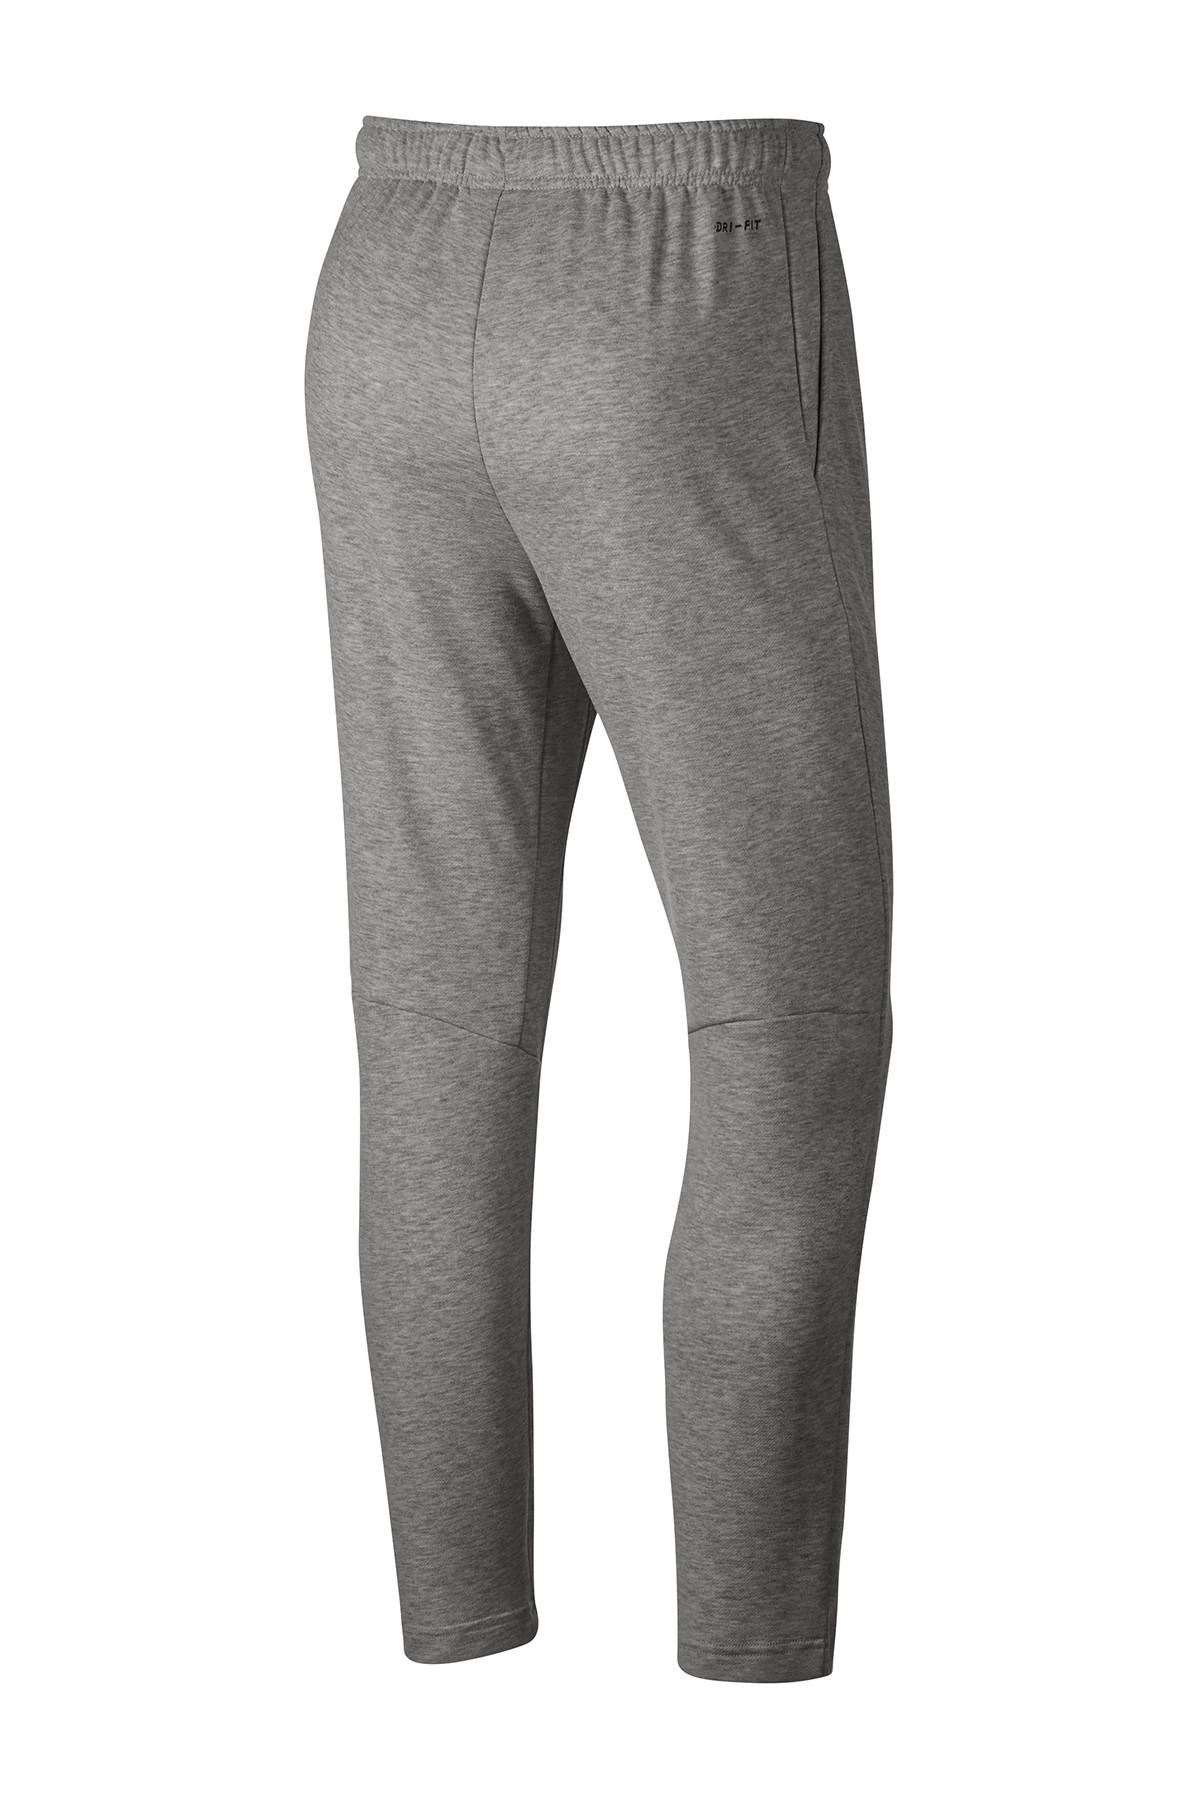 Nike Fleece Dri-fit Training Sweatpants in dk Grey Heather/Black (Gray ...